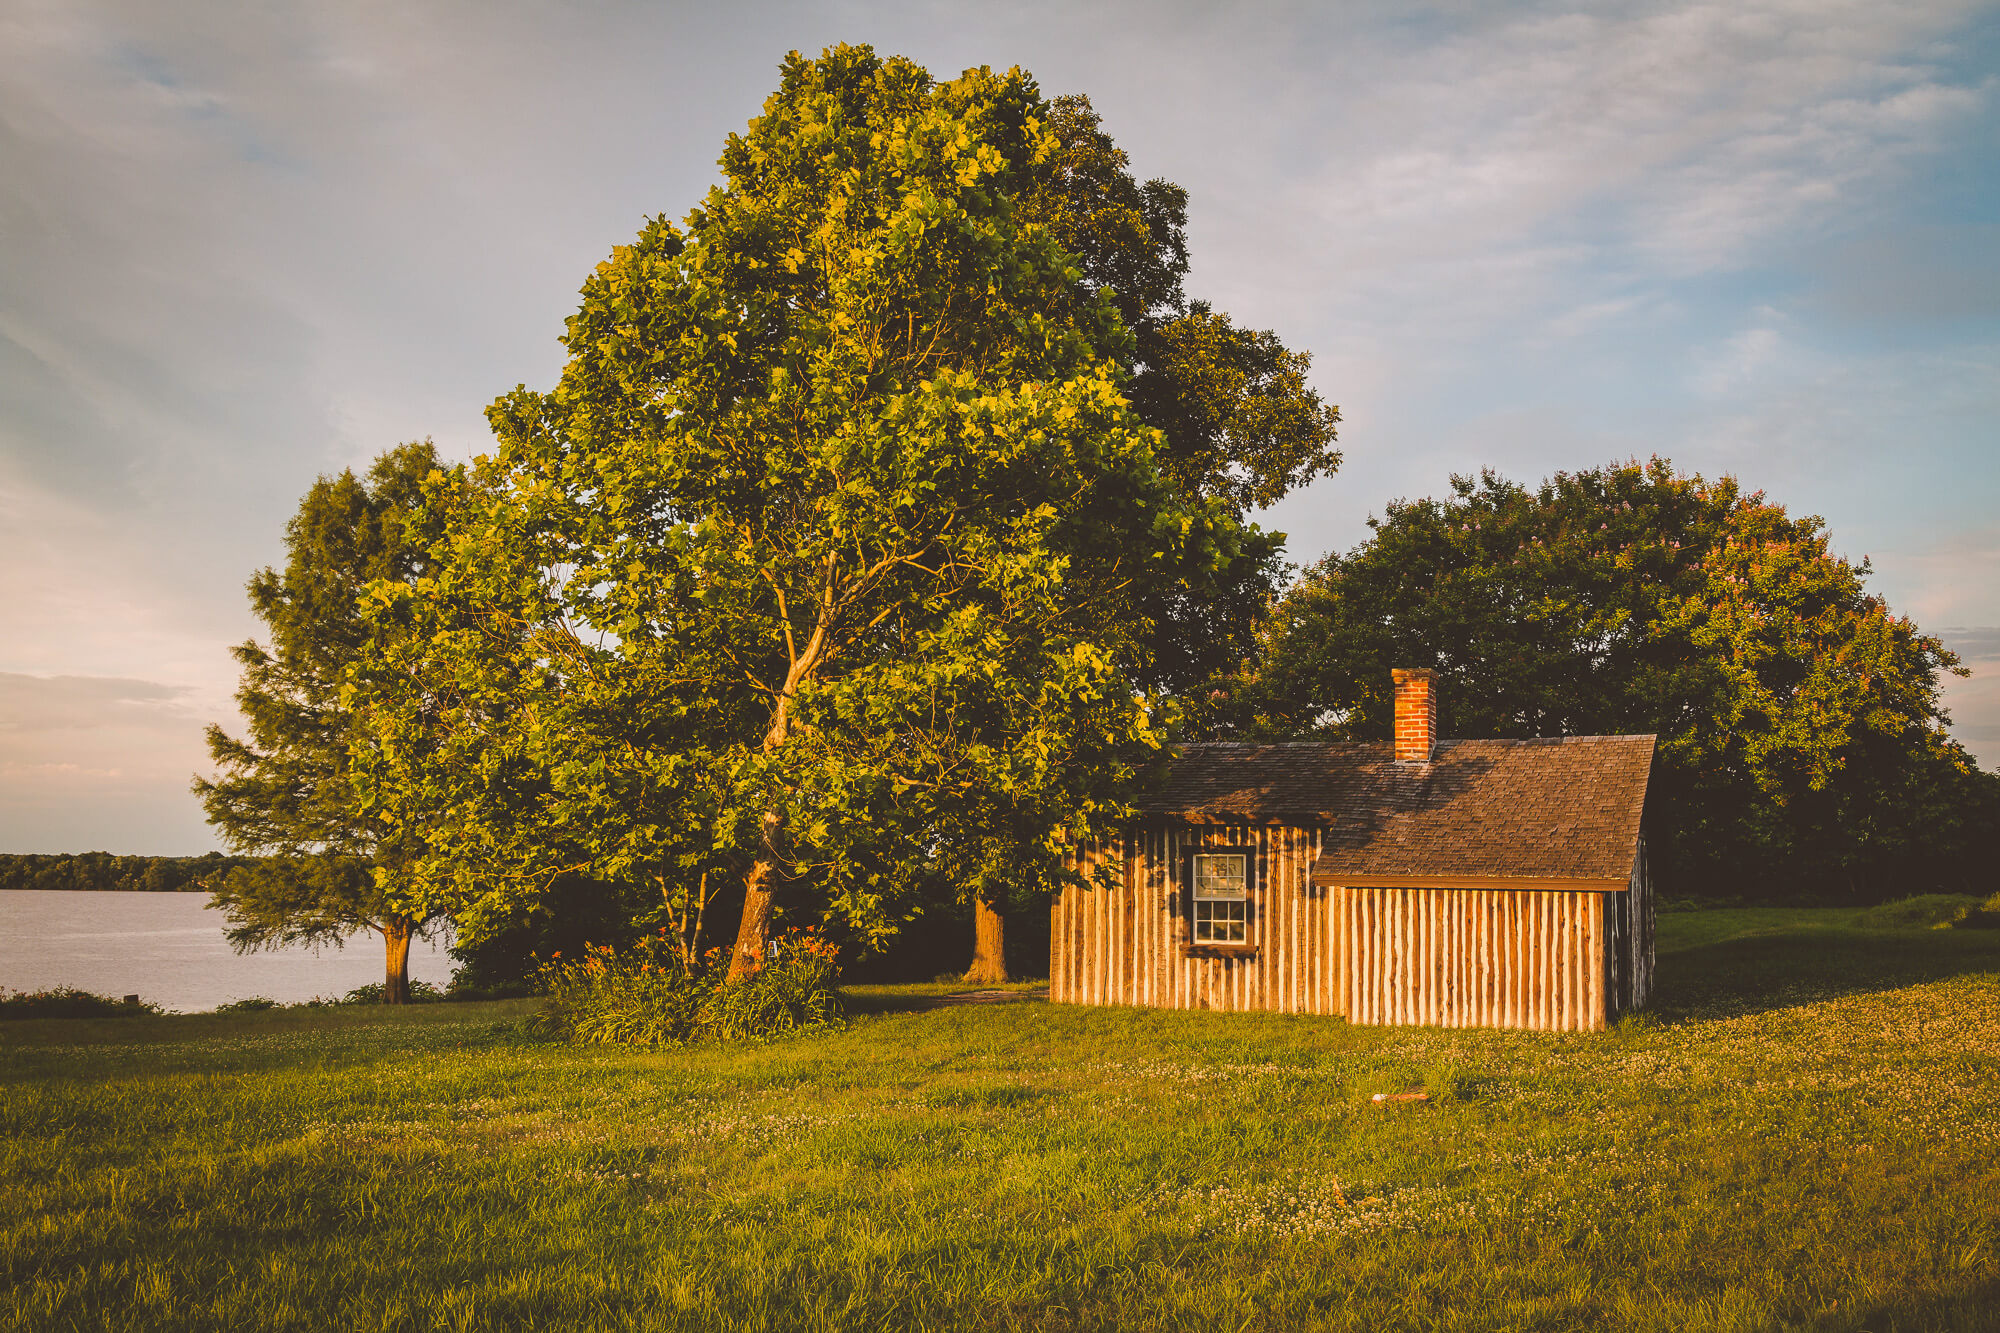 Grant's Cabin at Appomattox Manor